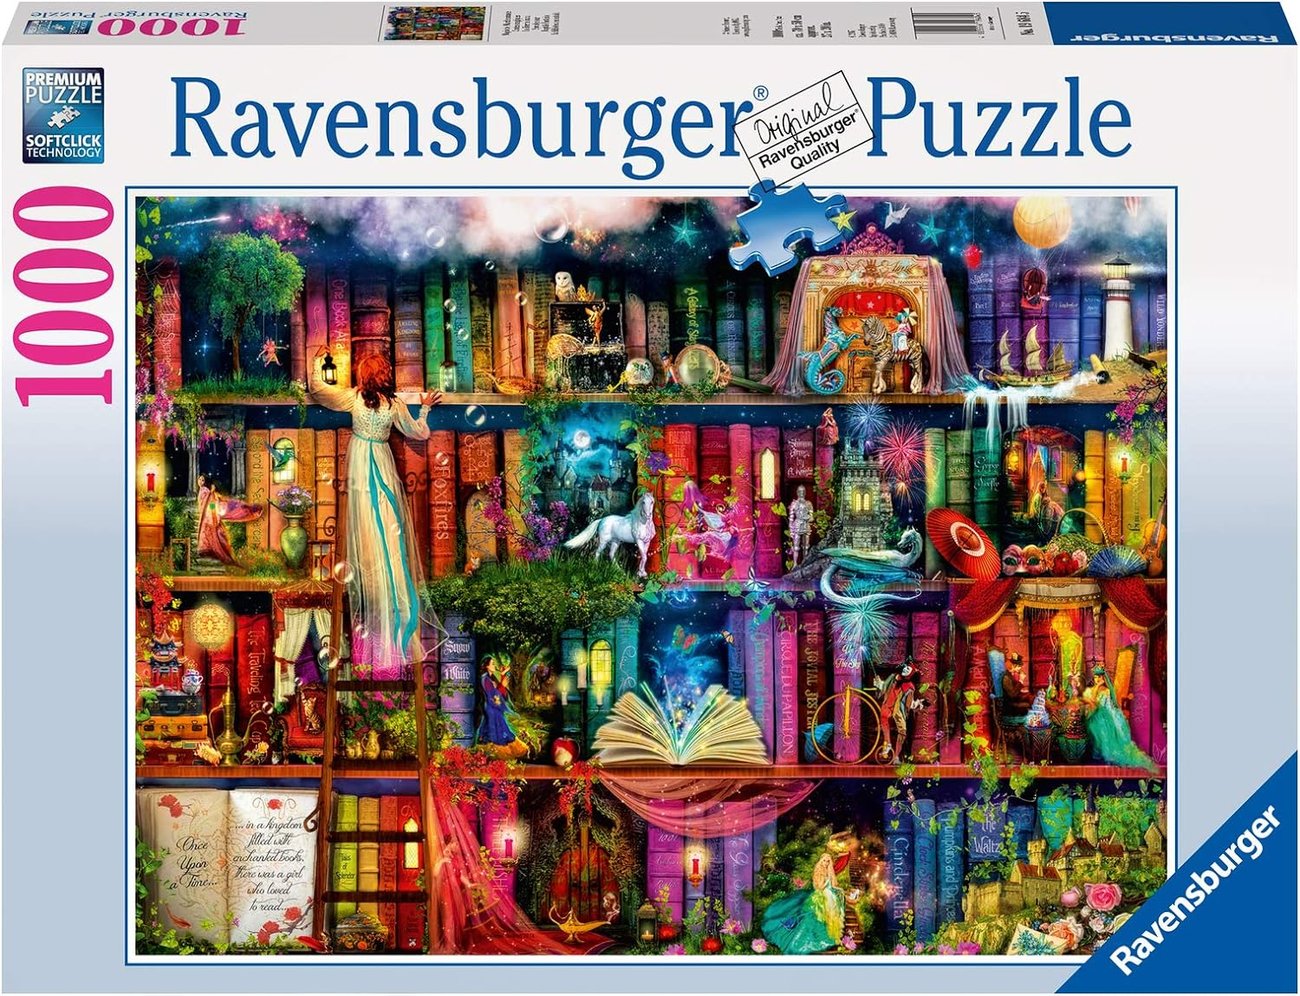 Ravensburger Puzzle 19684 - Magische Märchenstunde - 1000 Teile Puzzle für Erwachsene